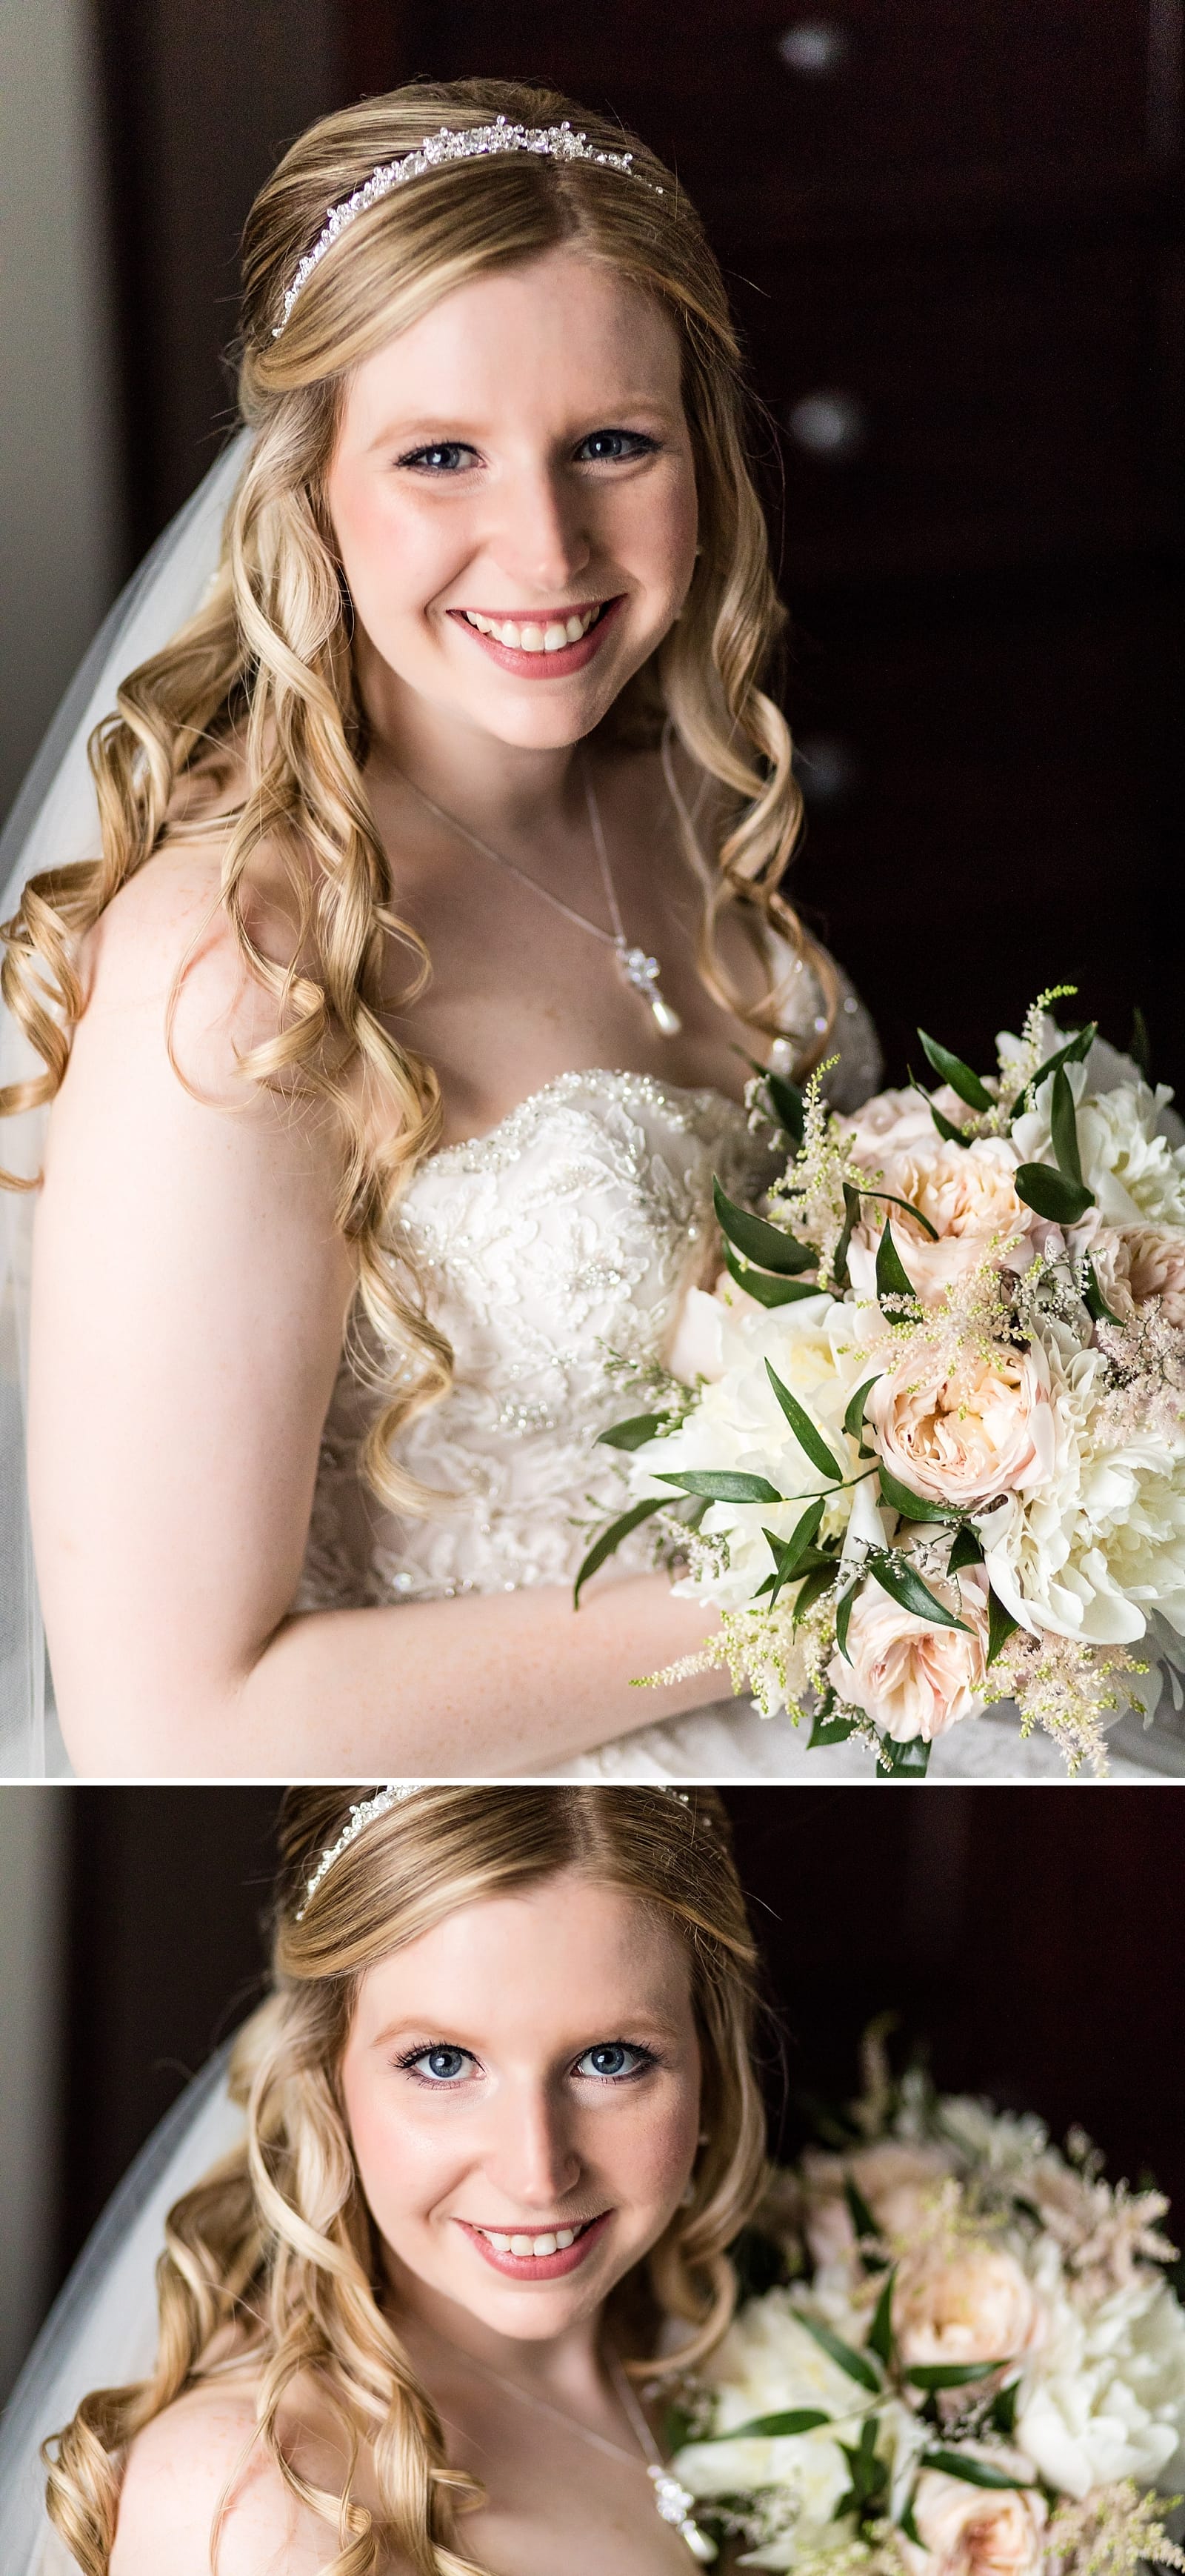 Bridal portraits, bridal bouquet, wedding portrait, natural light bride portrait